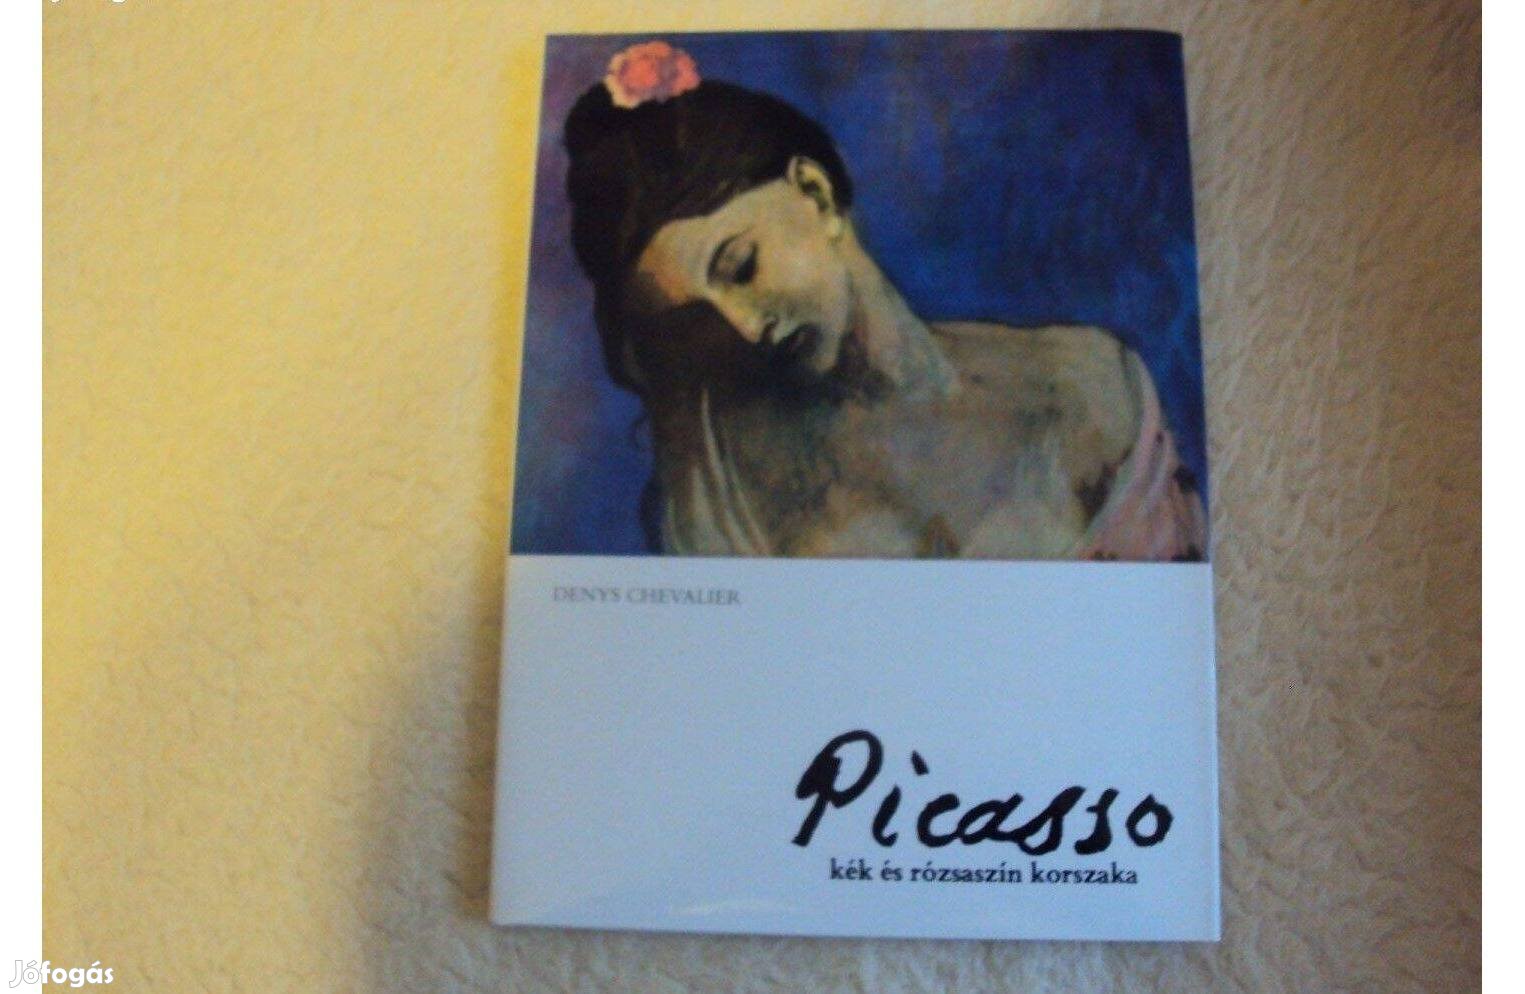 Denis Chevalier: Picasso kék és rózsaszín korszaka